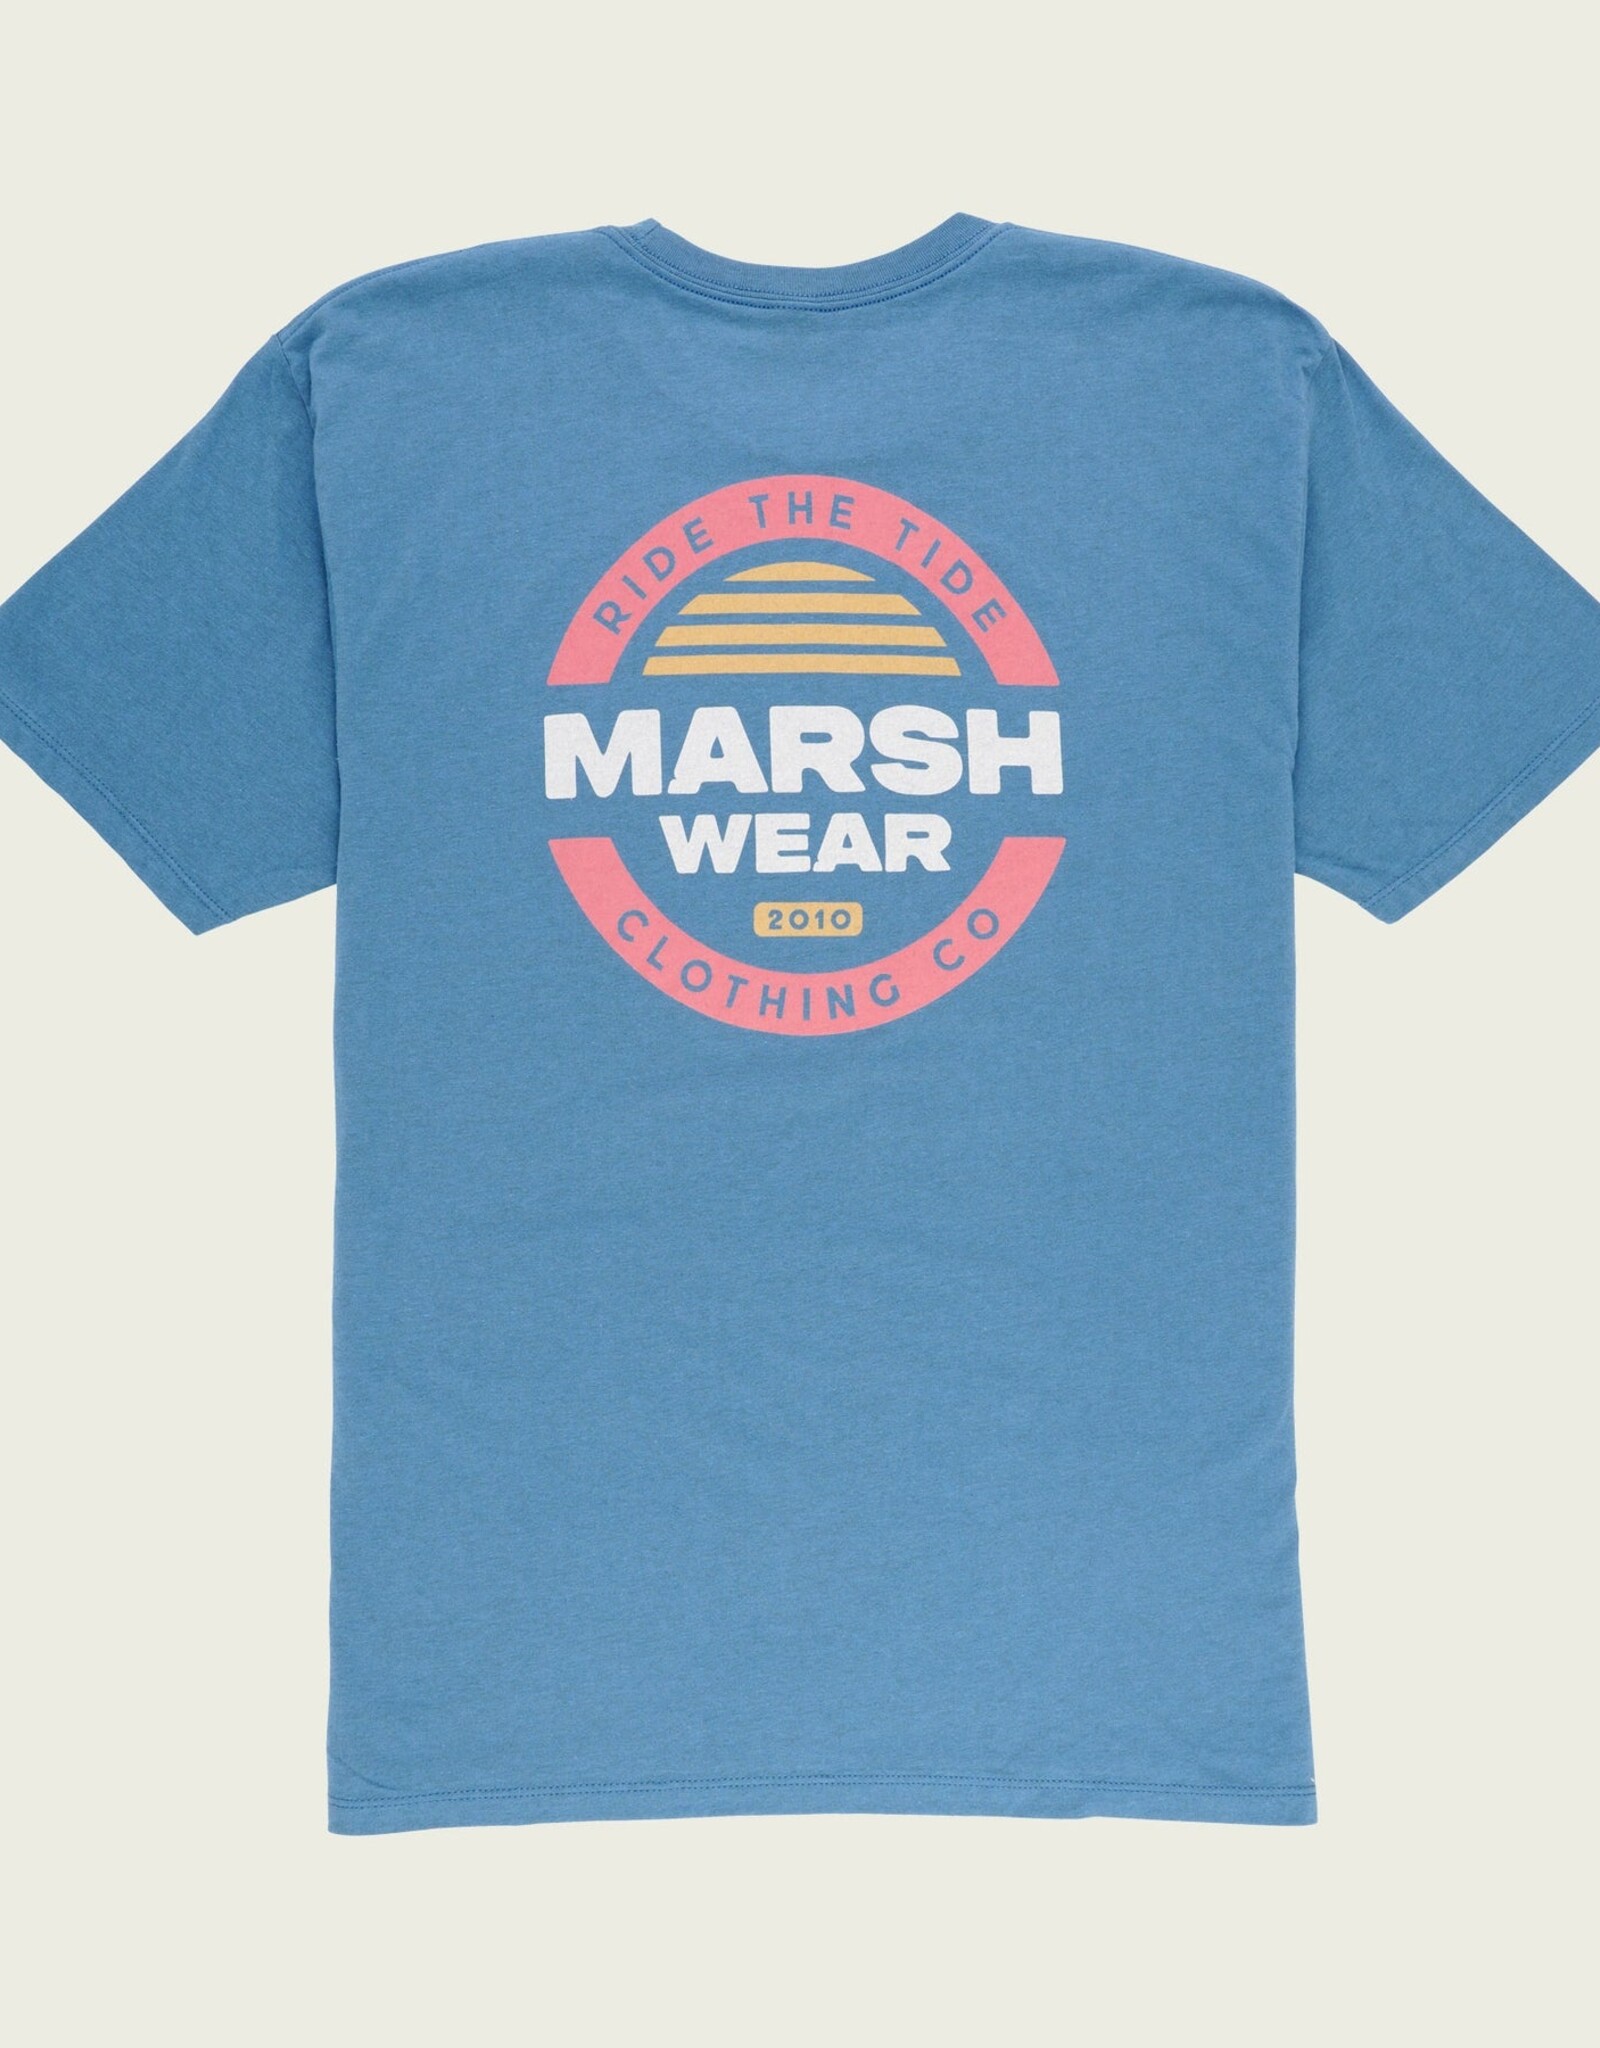 Marsh Wear Marsh Wear SS Tee